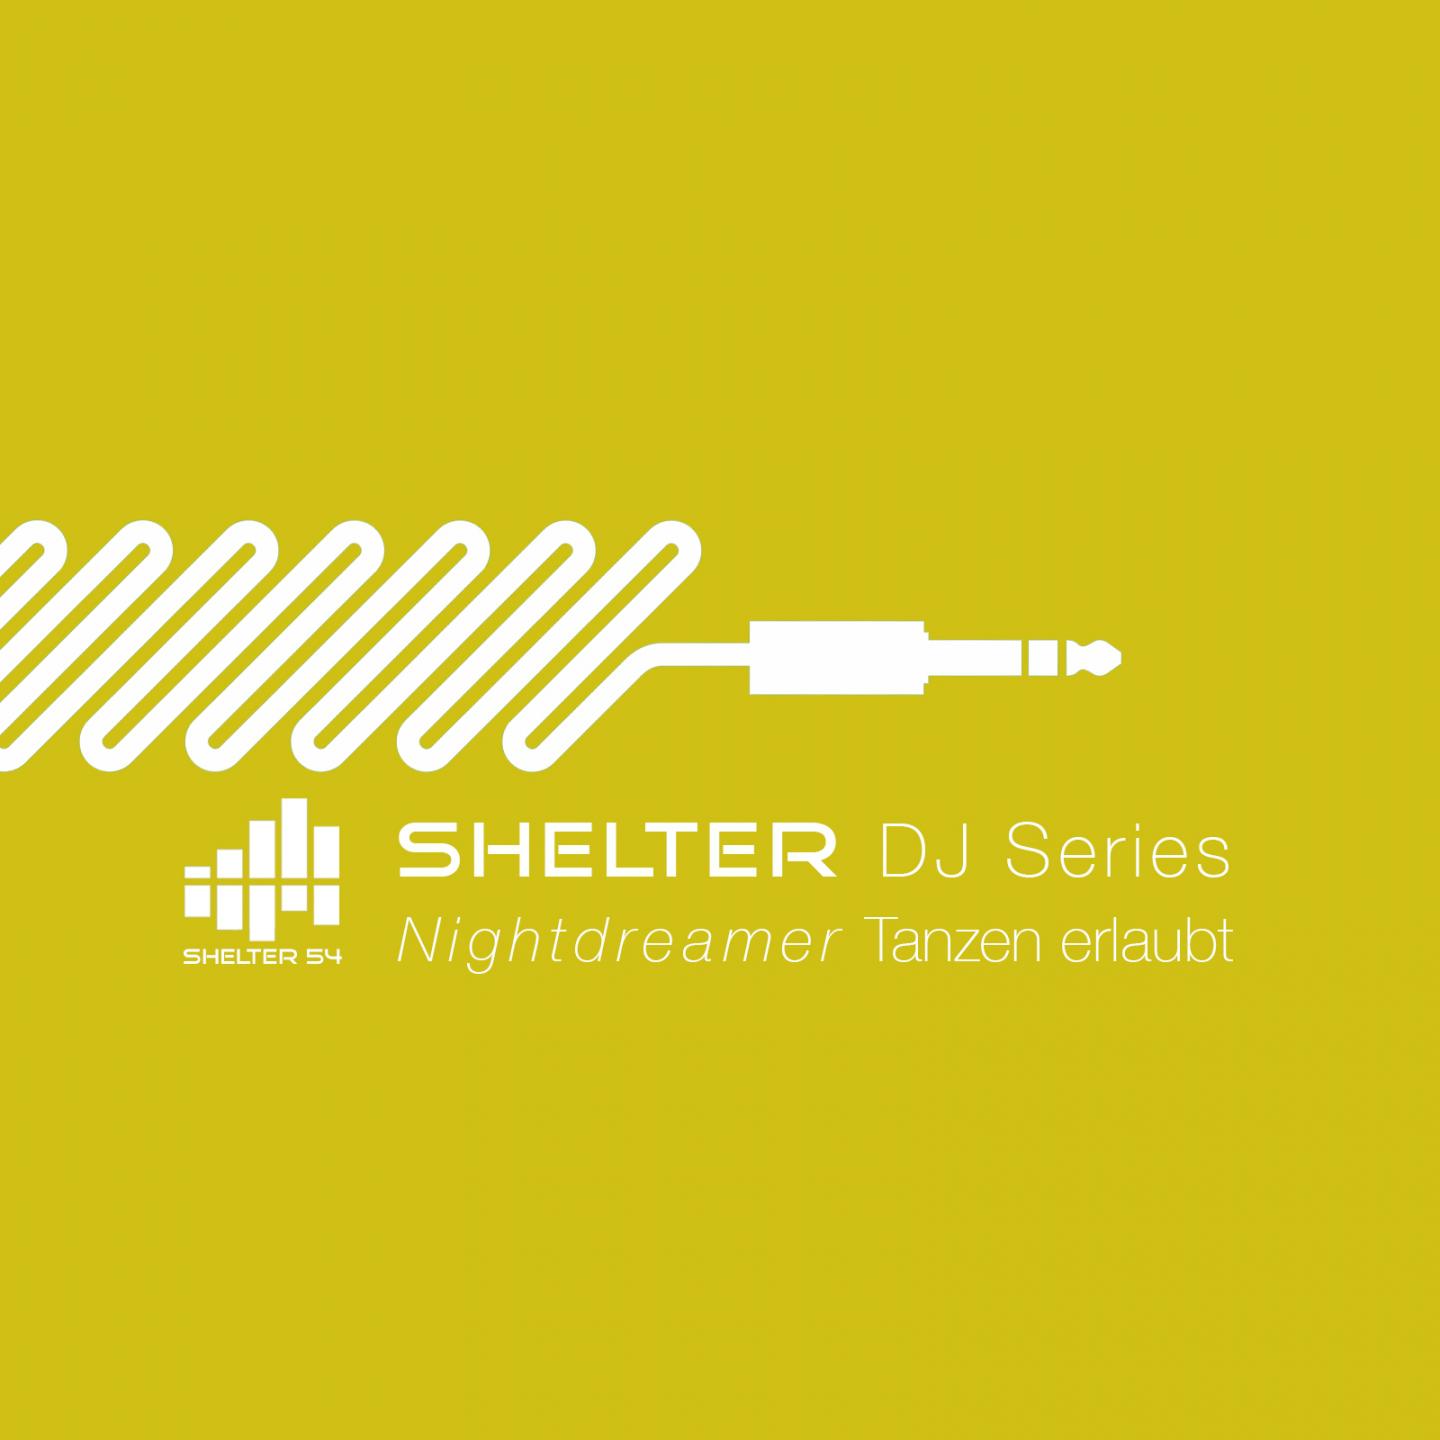 Shelter 54 DJ Series Tanzen erlaubt by Nightdreamer